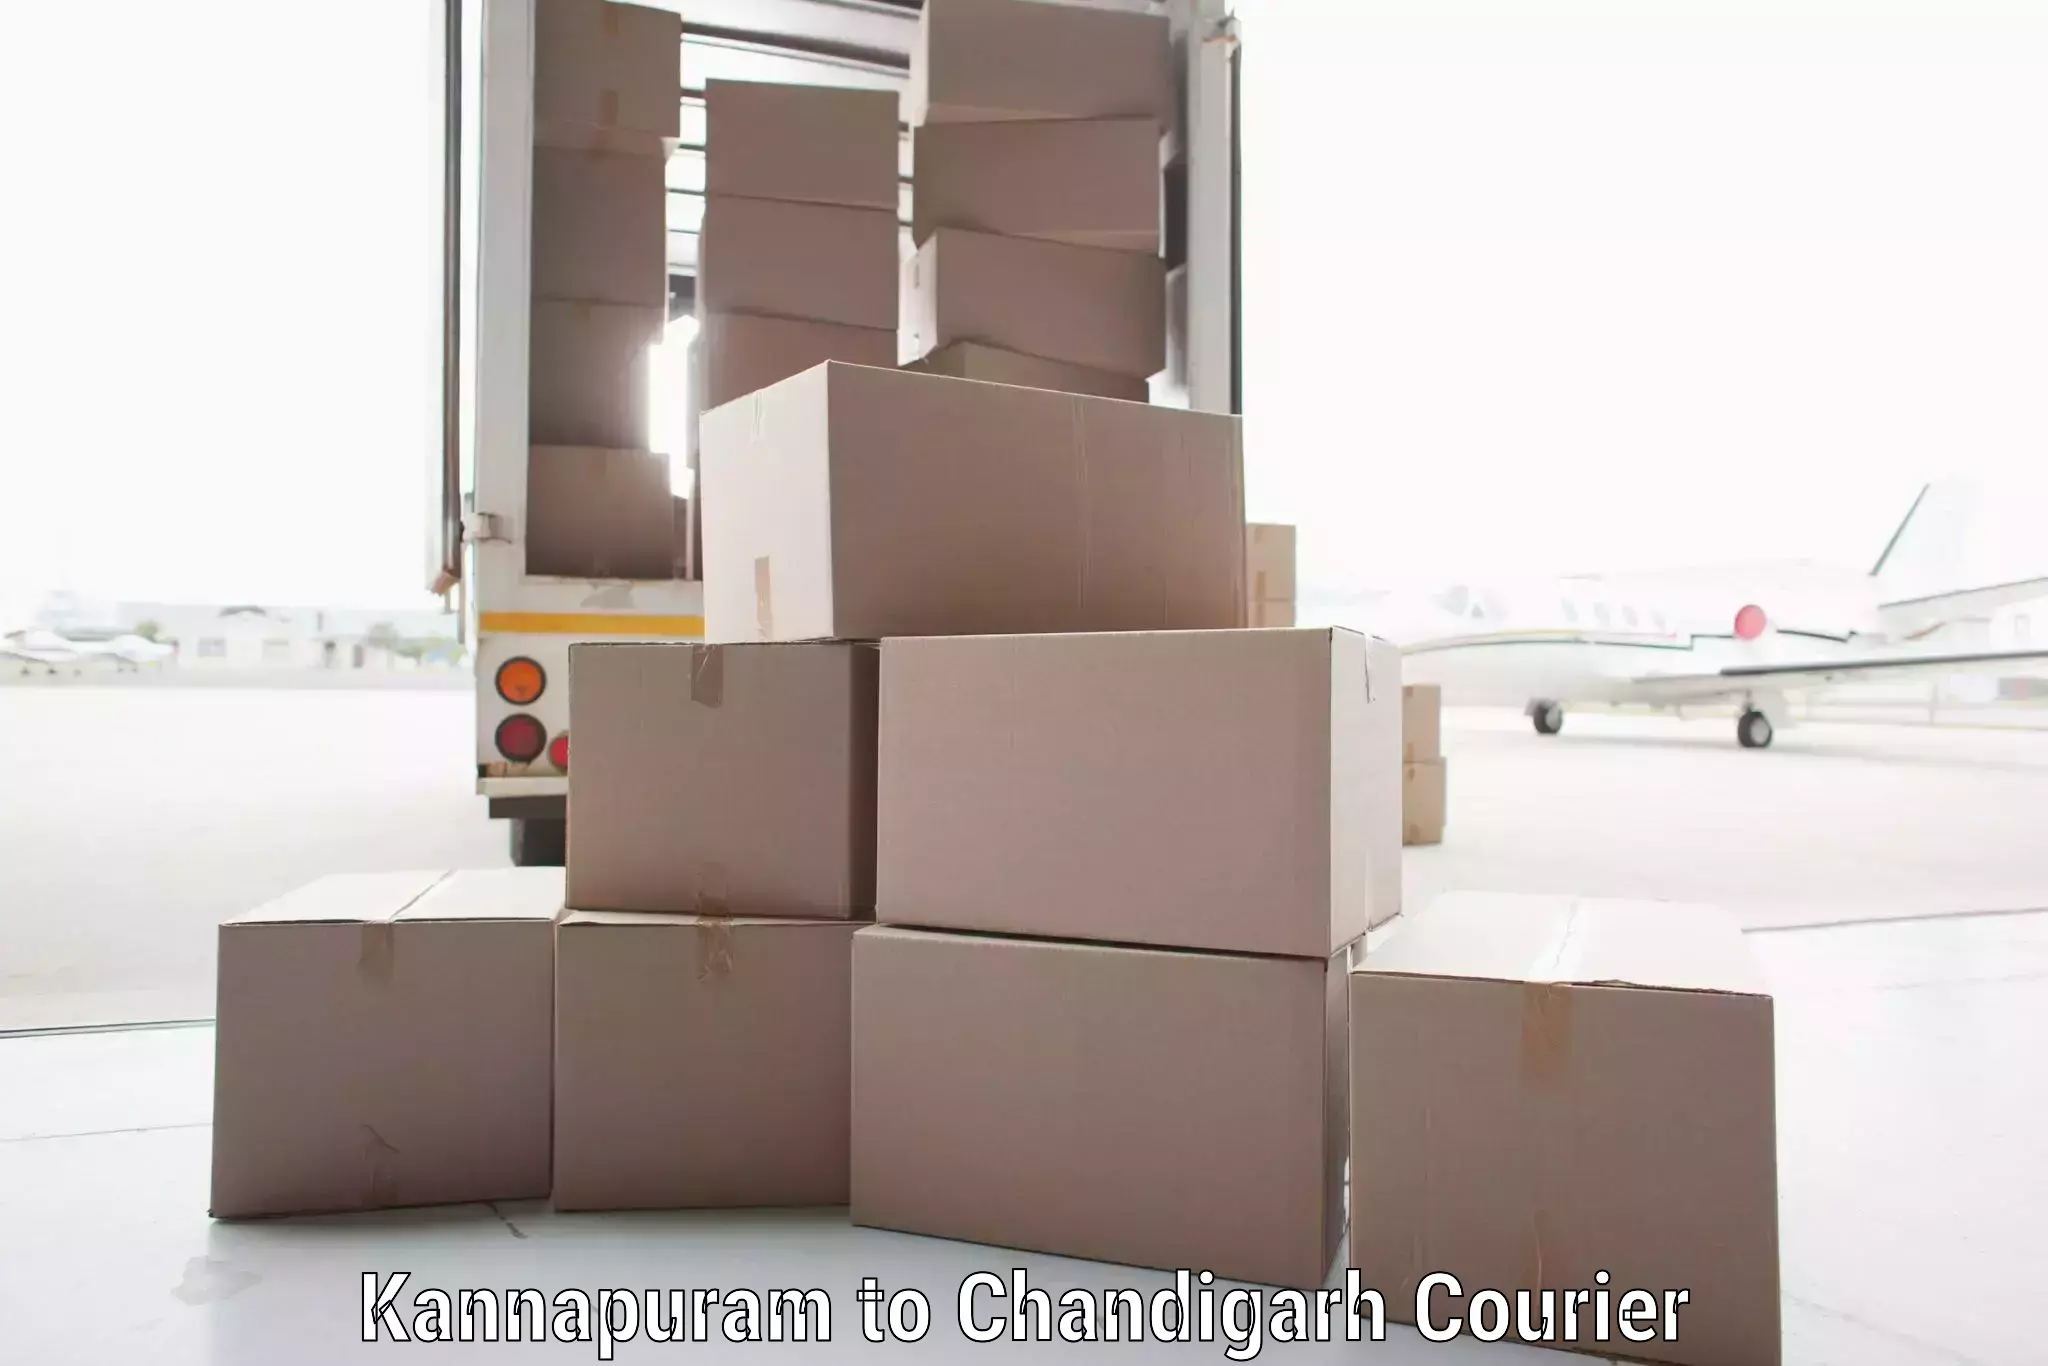 Door-to-door freight service Kannapuram to Chandigarh